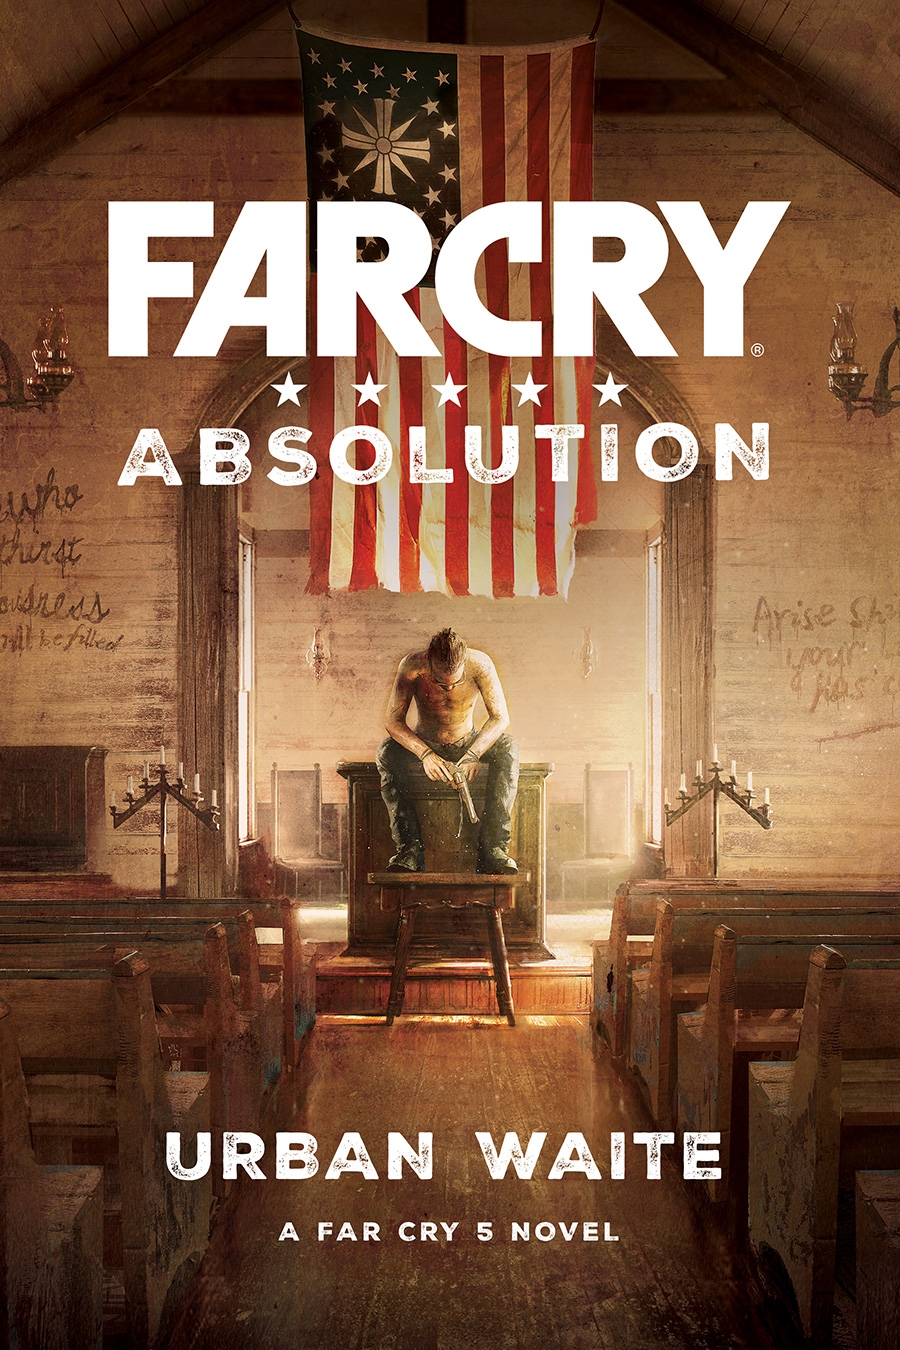 Far Cry Absolution Novel Announced for February 13 | DeviceDaily.com